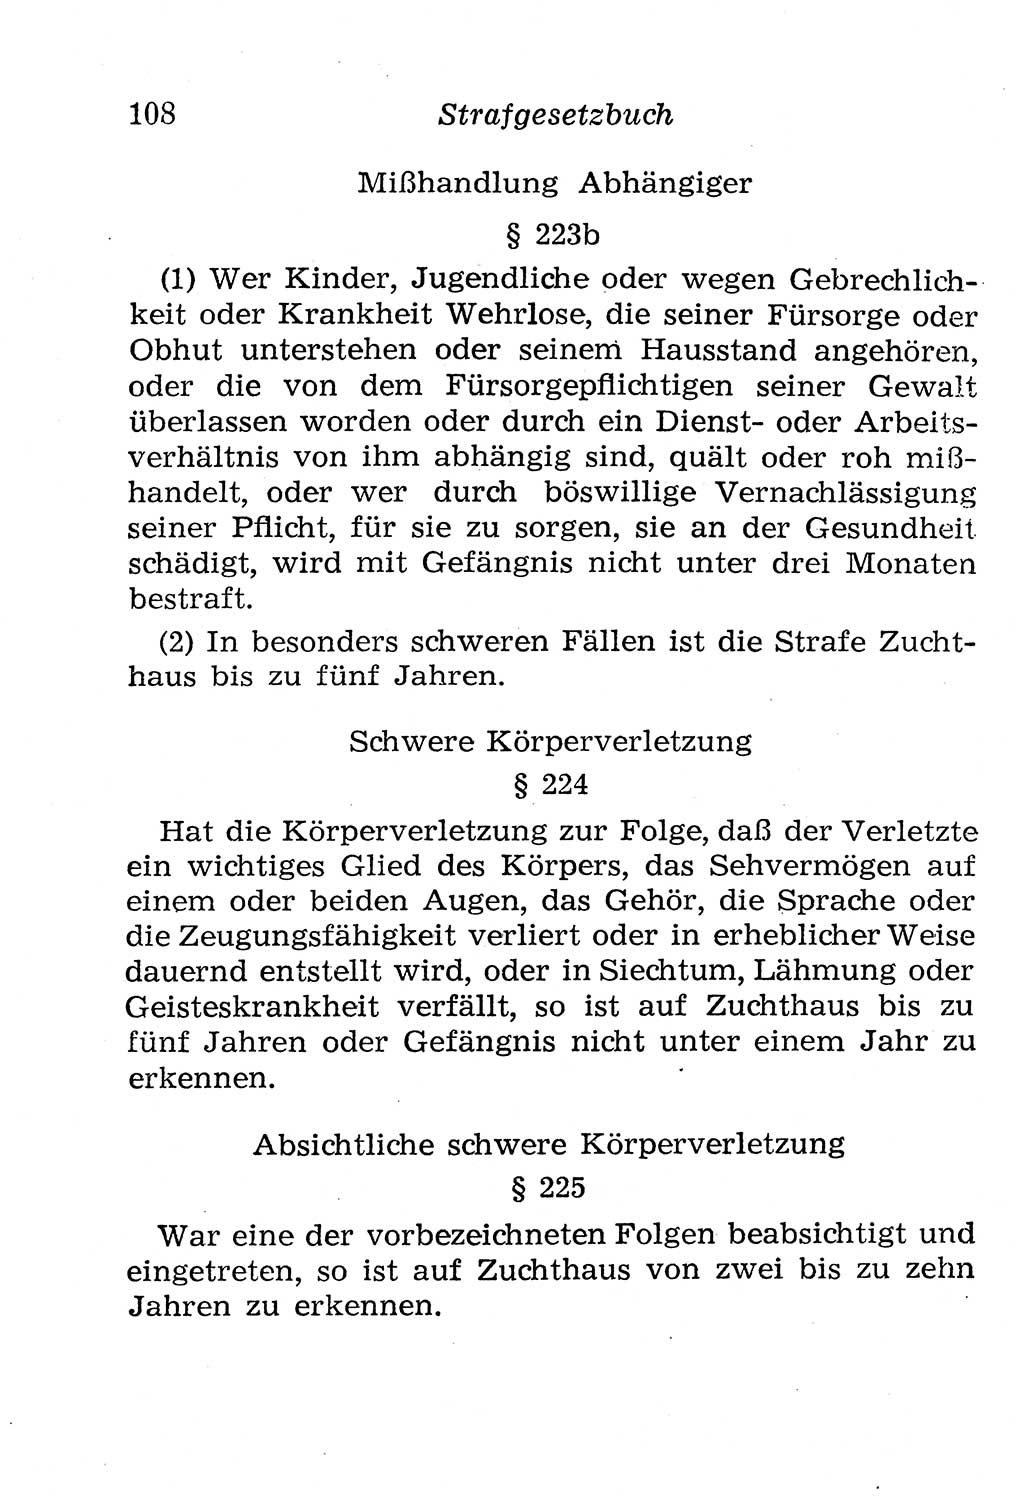 Strafgesetzbuch (StGB) und andere Strafgesetze [Deutsche Demokratische Republik (DDR)] 1958, Seite 108 (StGB Strafges. DDR 1958, S. 108)